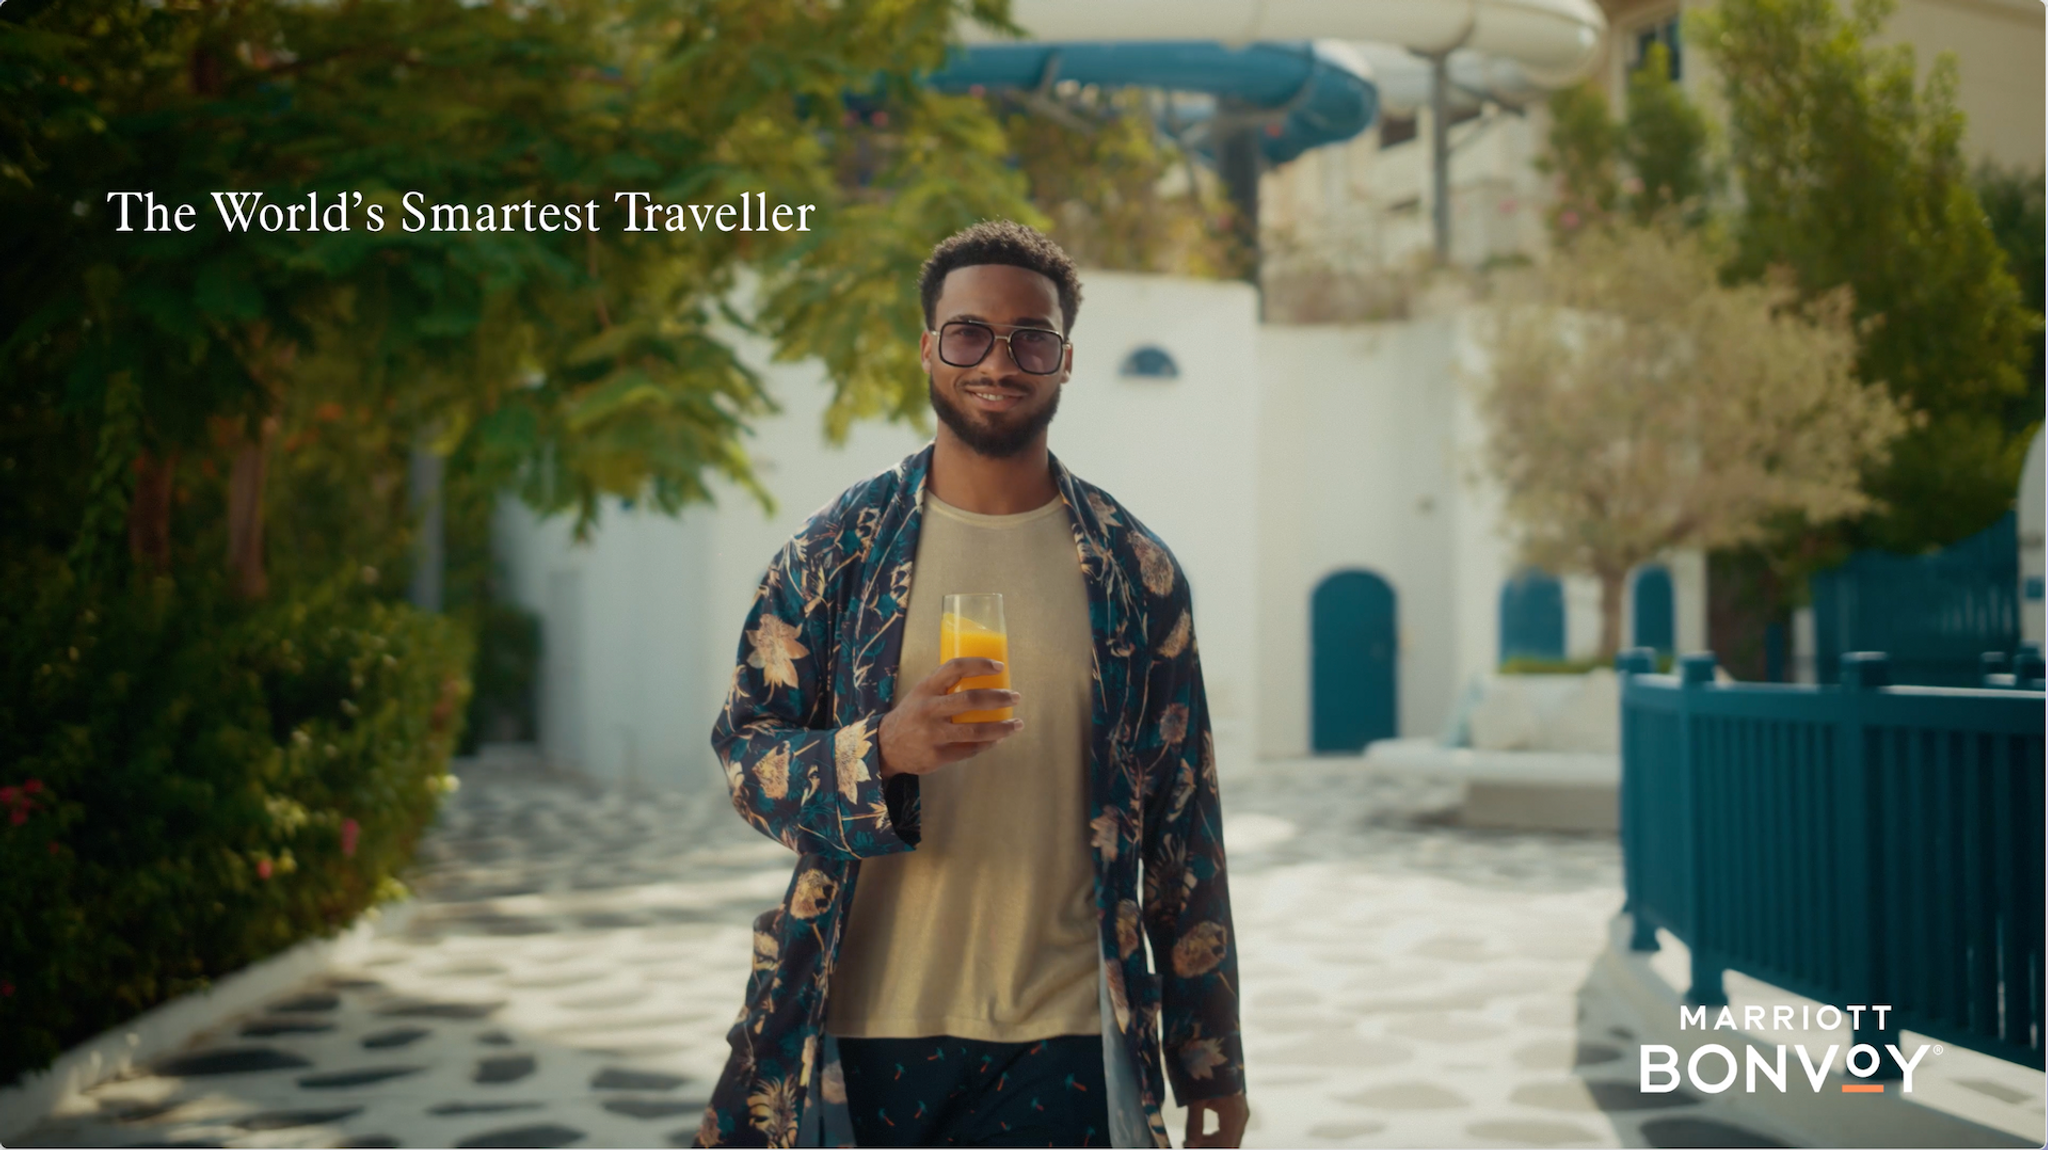 Marriott Bonvoy, The World’s Smartest Traveller